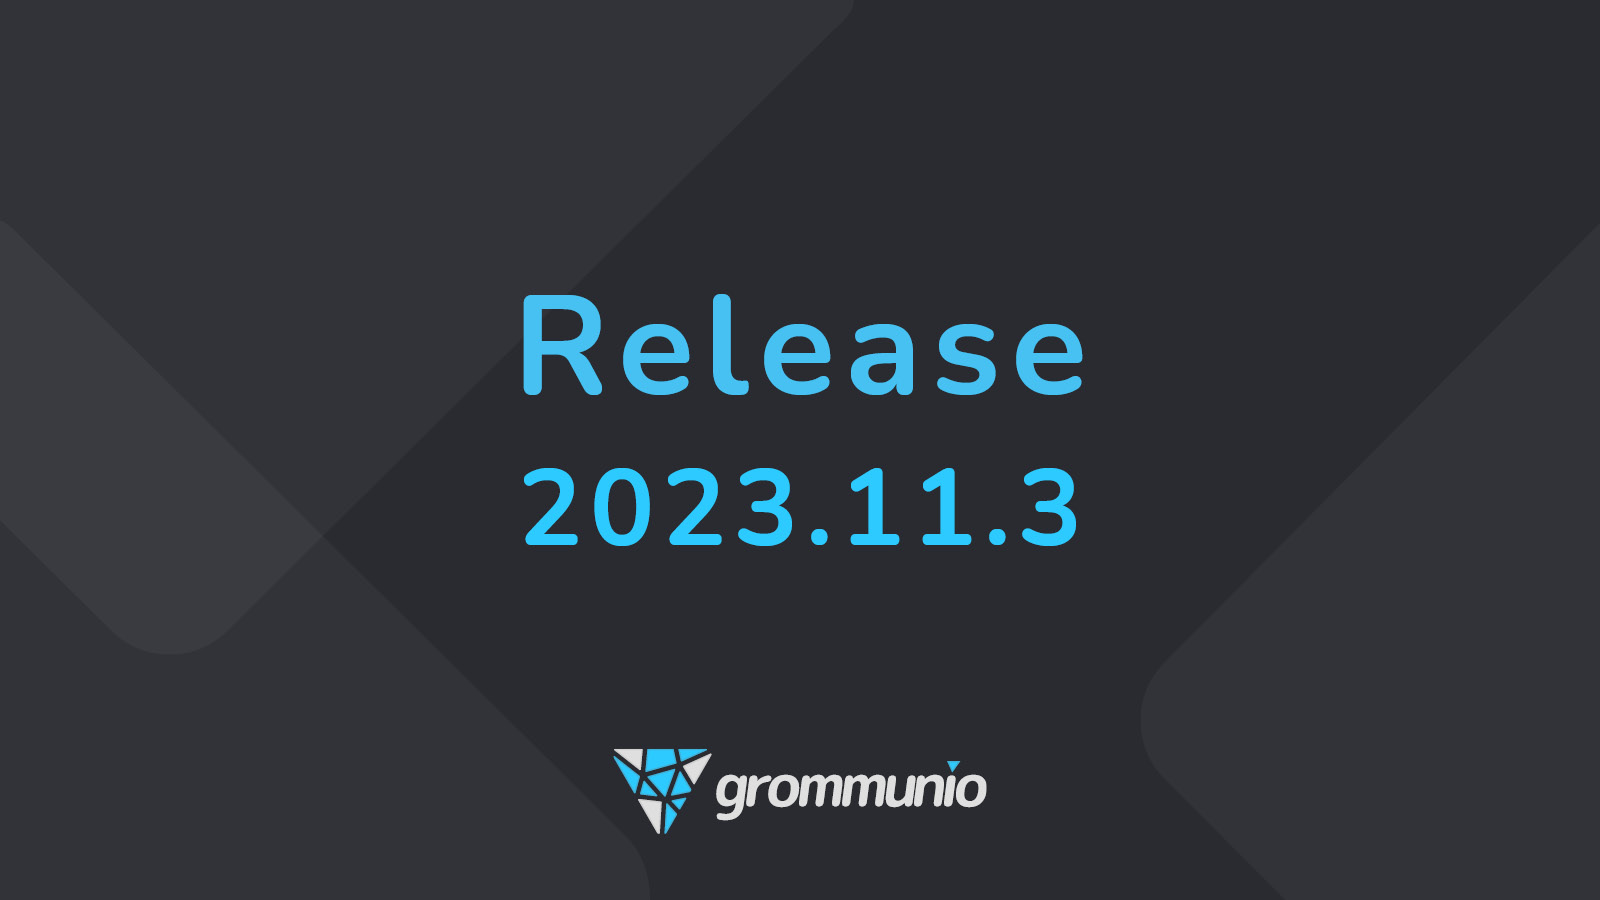 grommunio Releases Version 2023.11.3